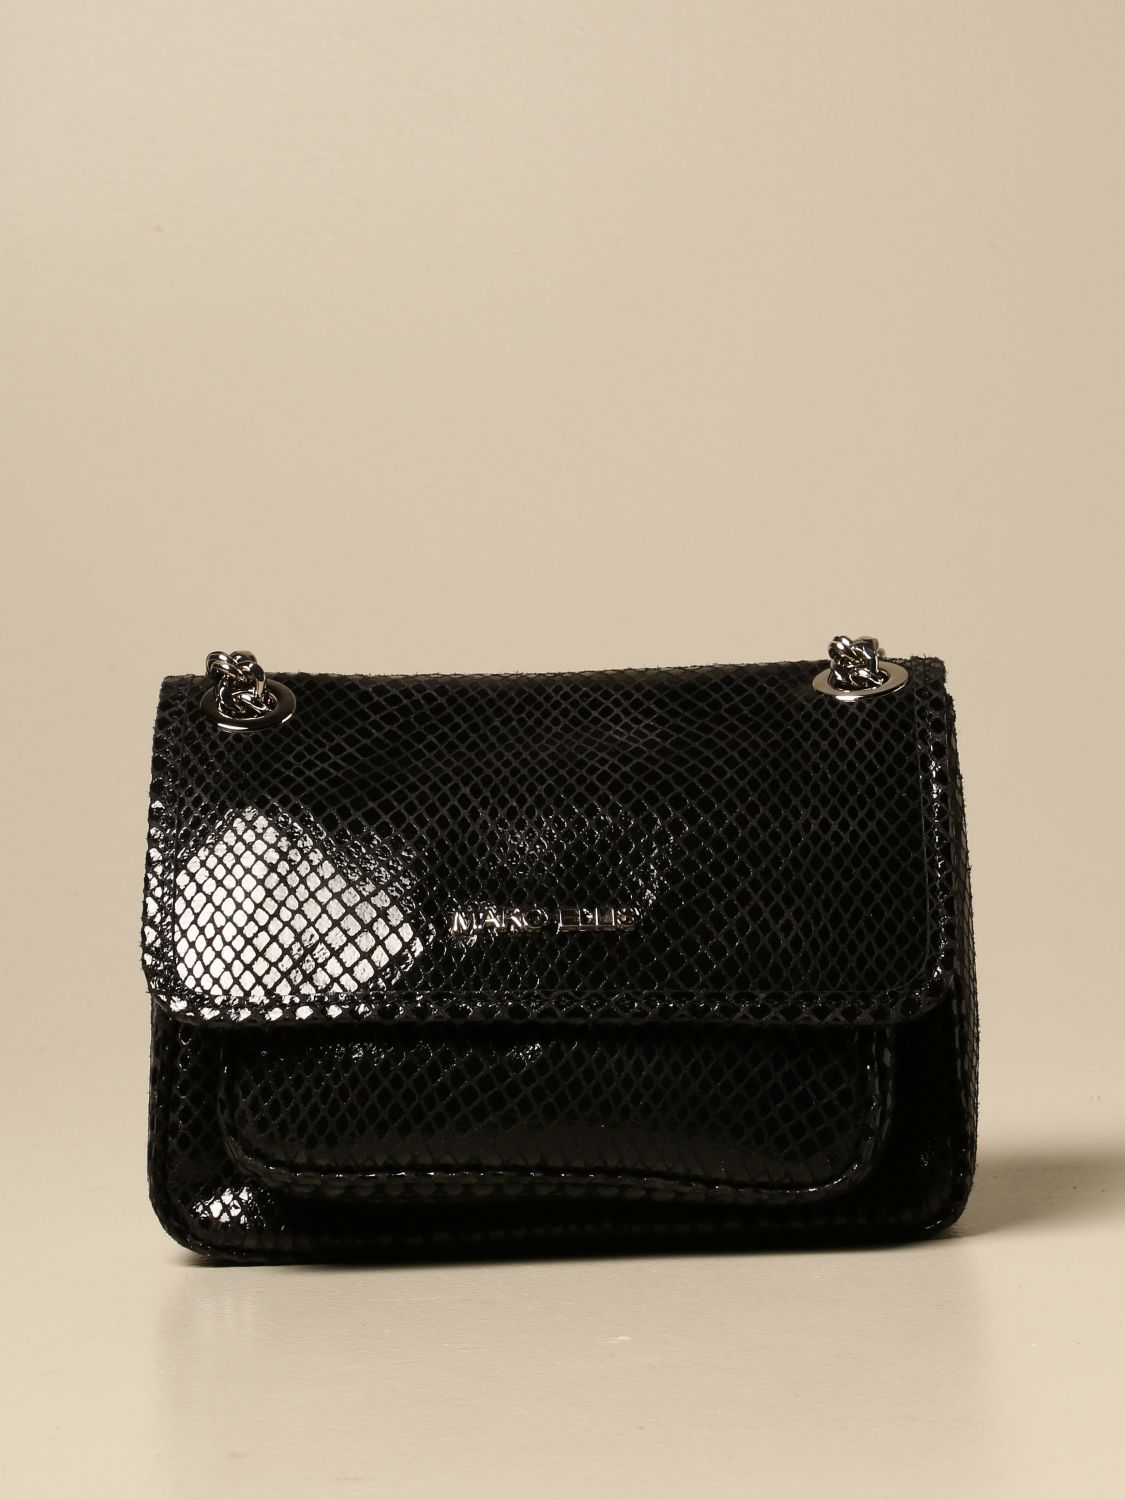 Marc Ellis Outlet: Runye M bag in shiny leather - Black | Marc Ellis ...